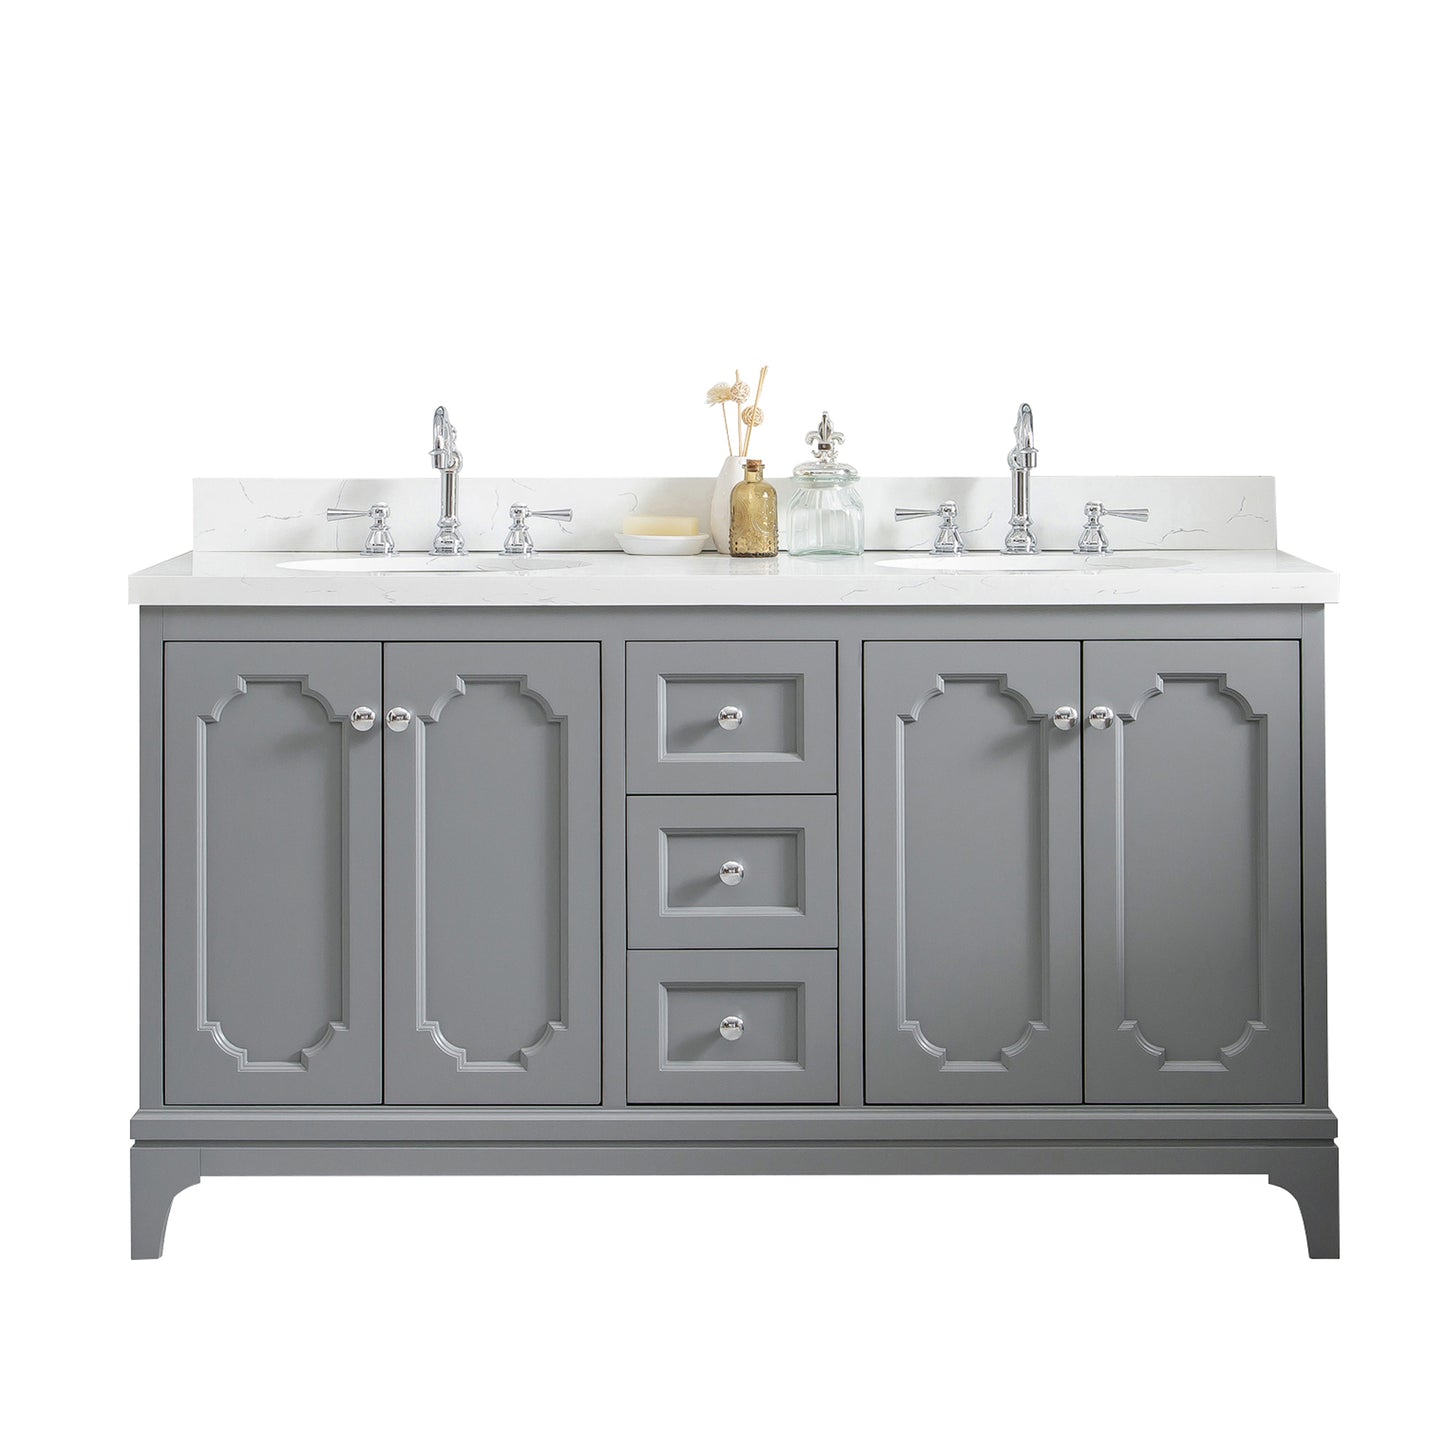 Water Creation Queen 60" Inch Double Sink Quartz Carrara Vanity with Lavatory Faucets - Luxe Bathroom Vanities